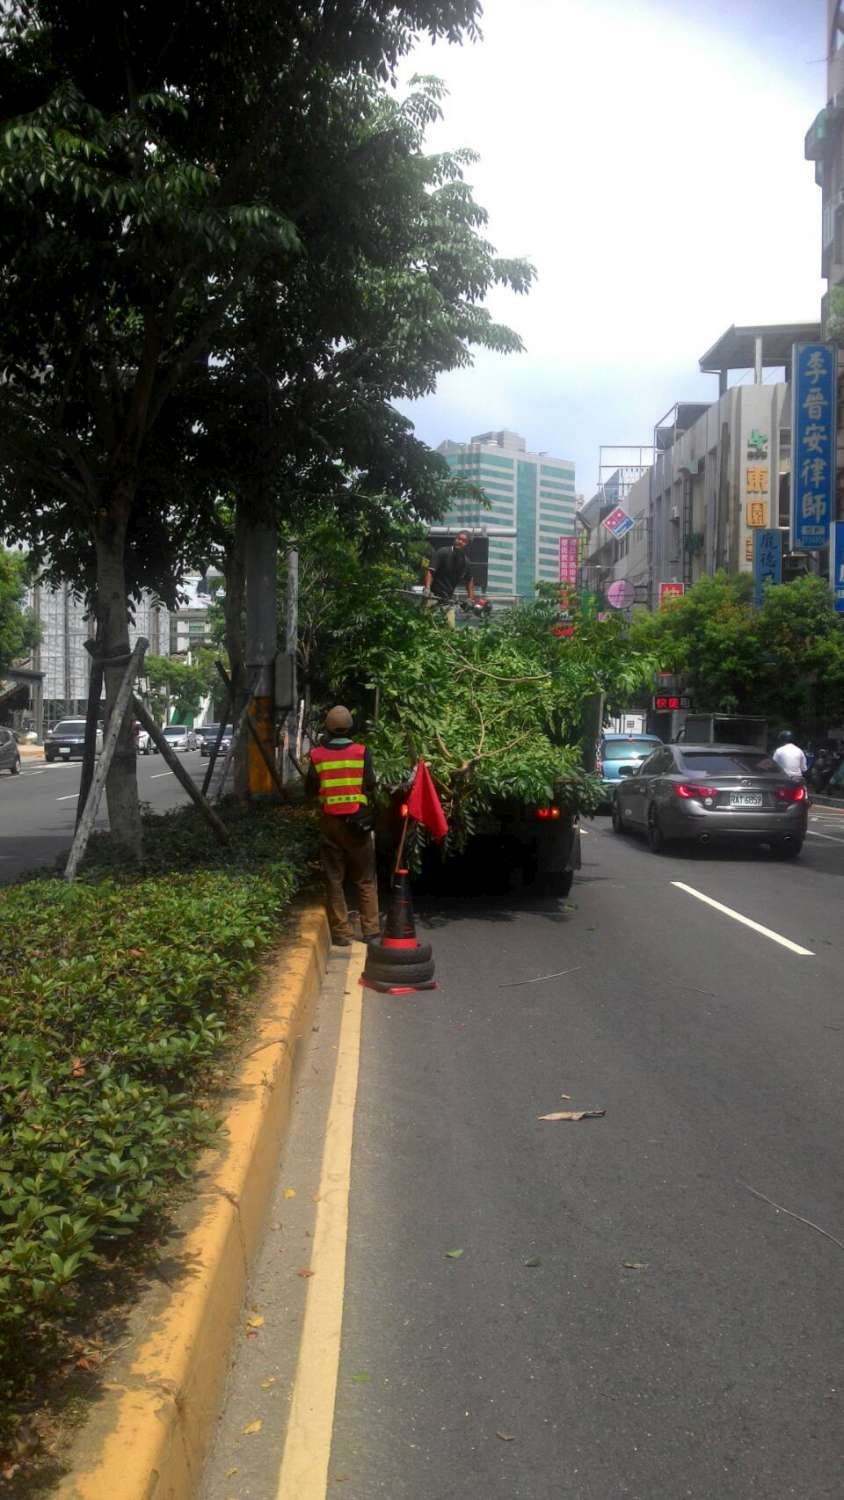 尼莎颱風來襲  市府加強梳理樹木